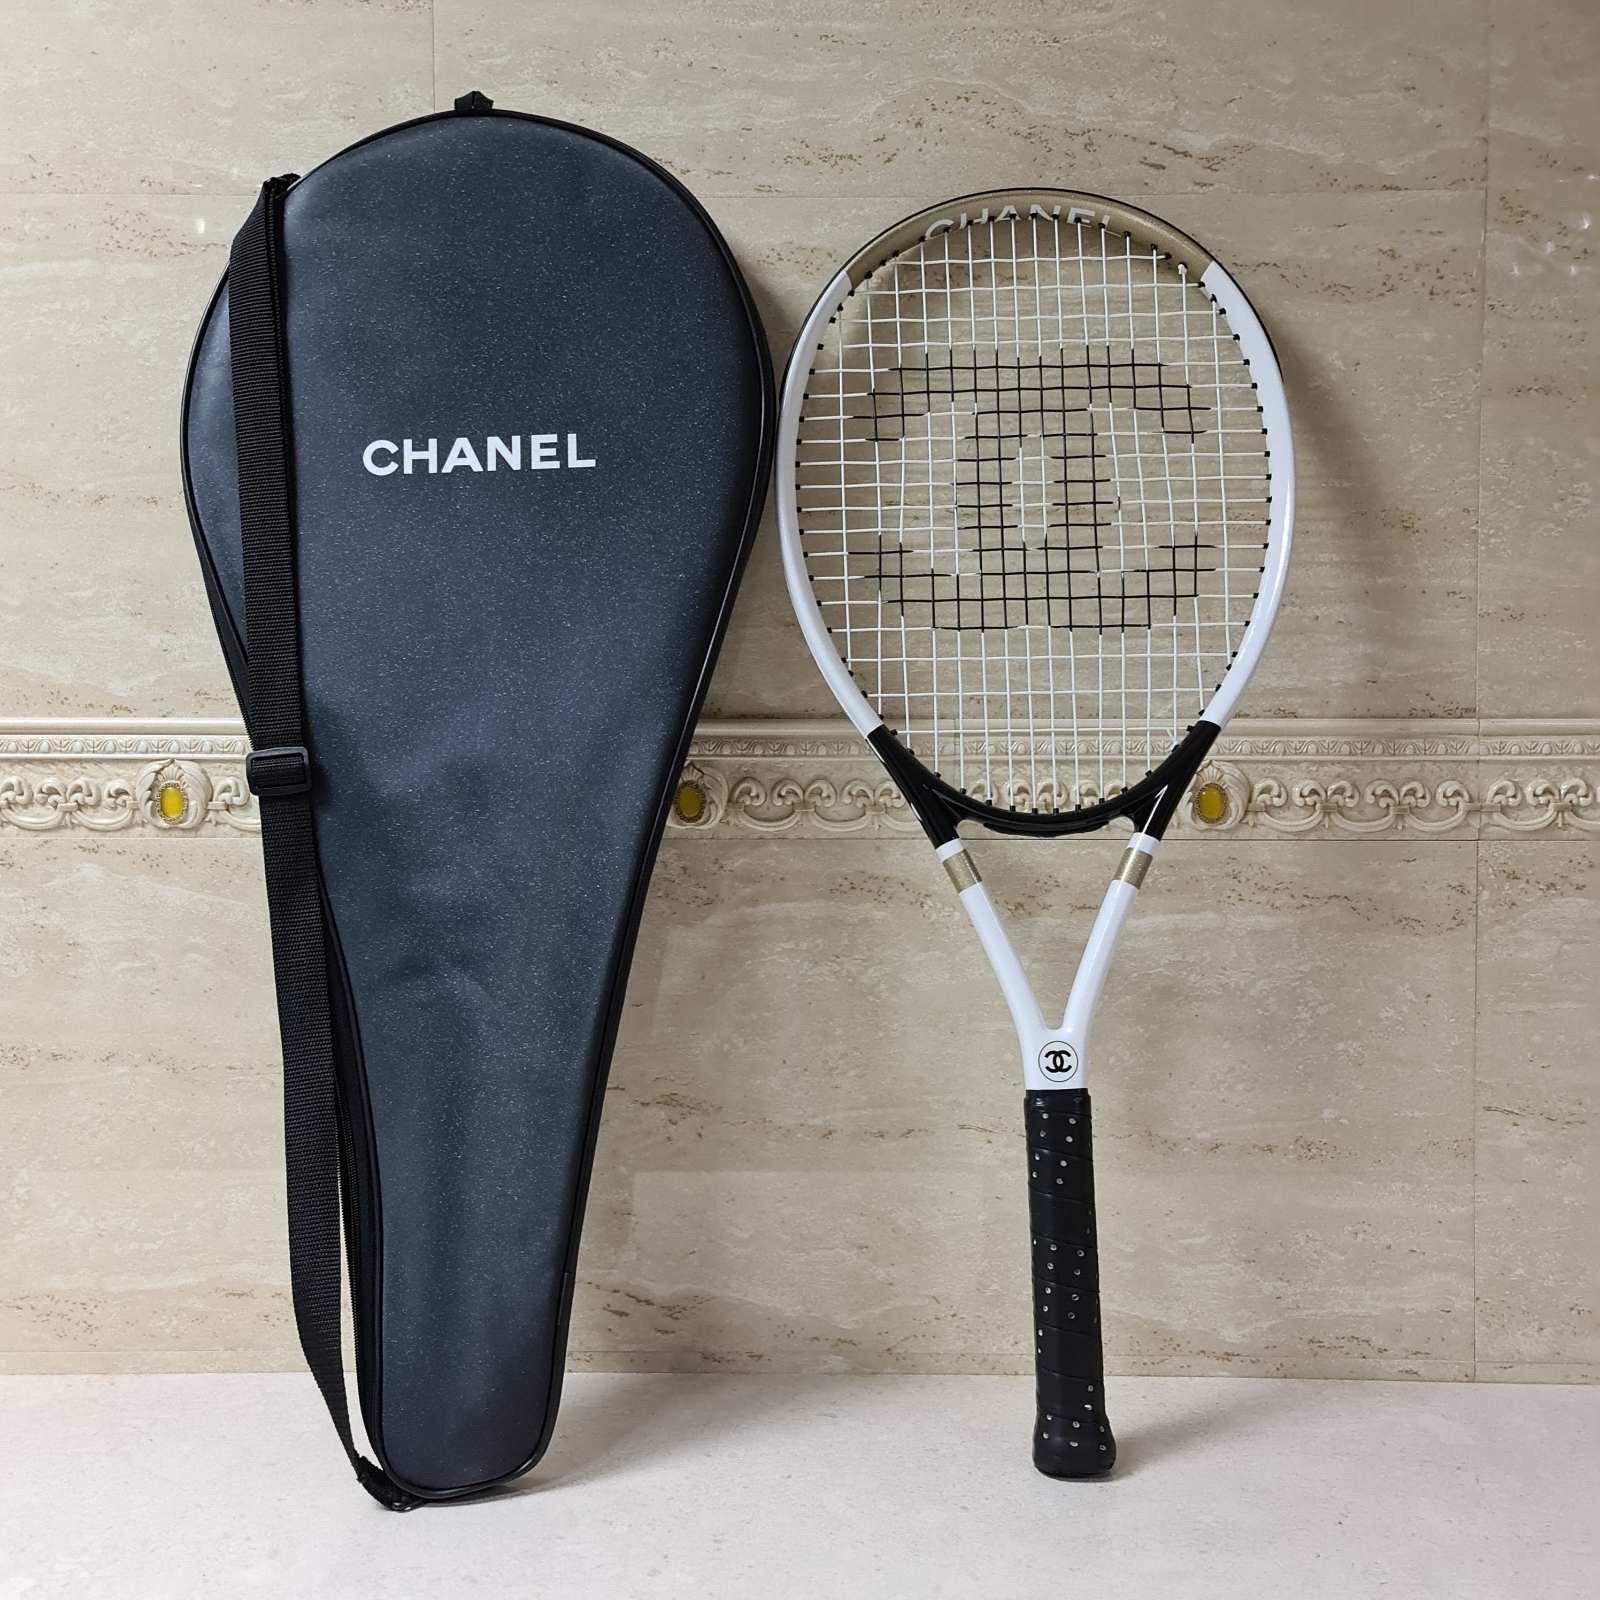 Women's or Men's Chanel Tennis Racket Set